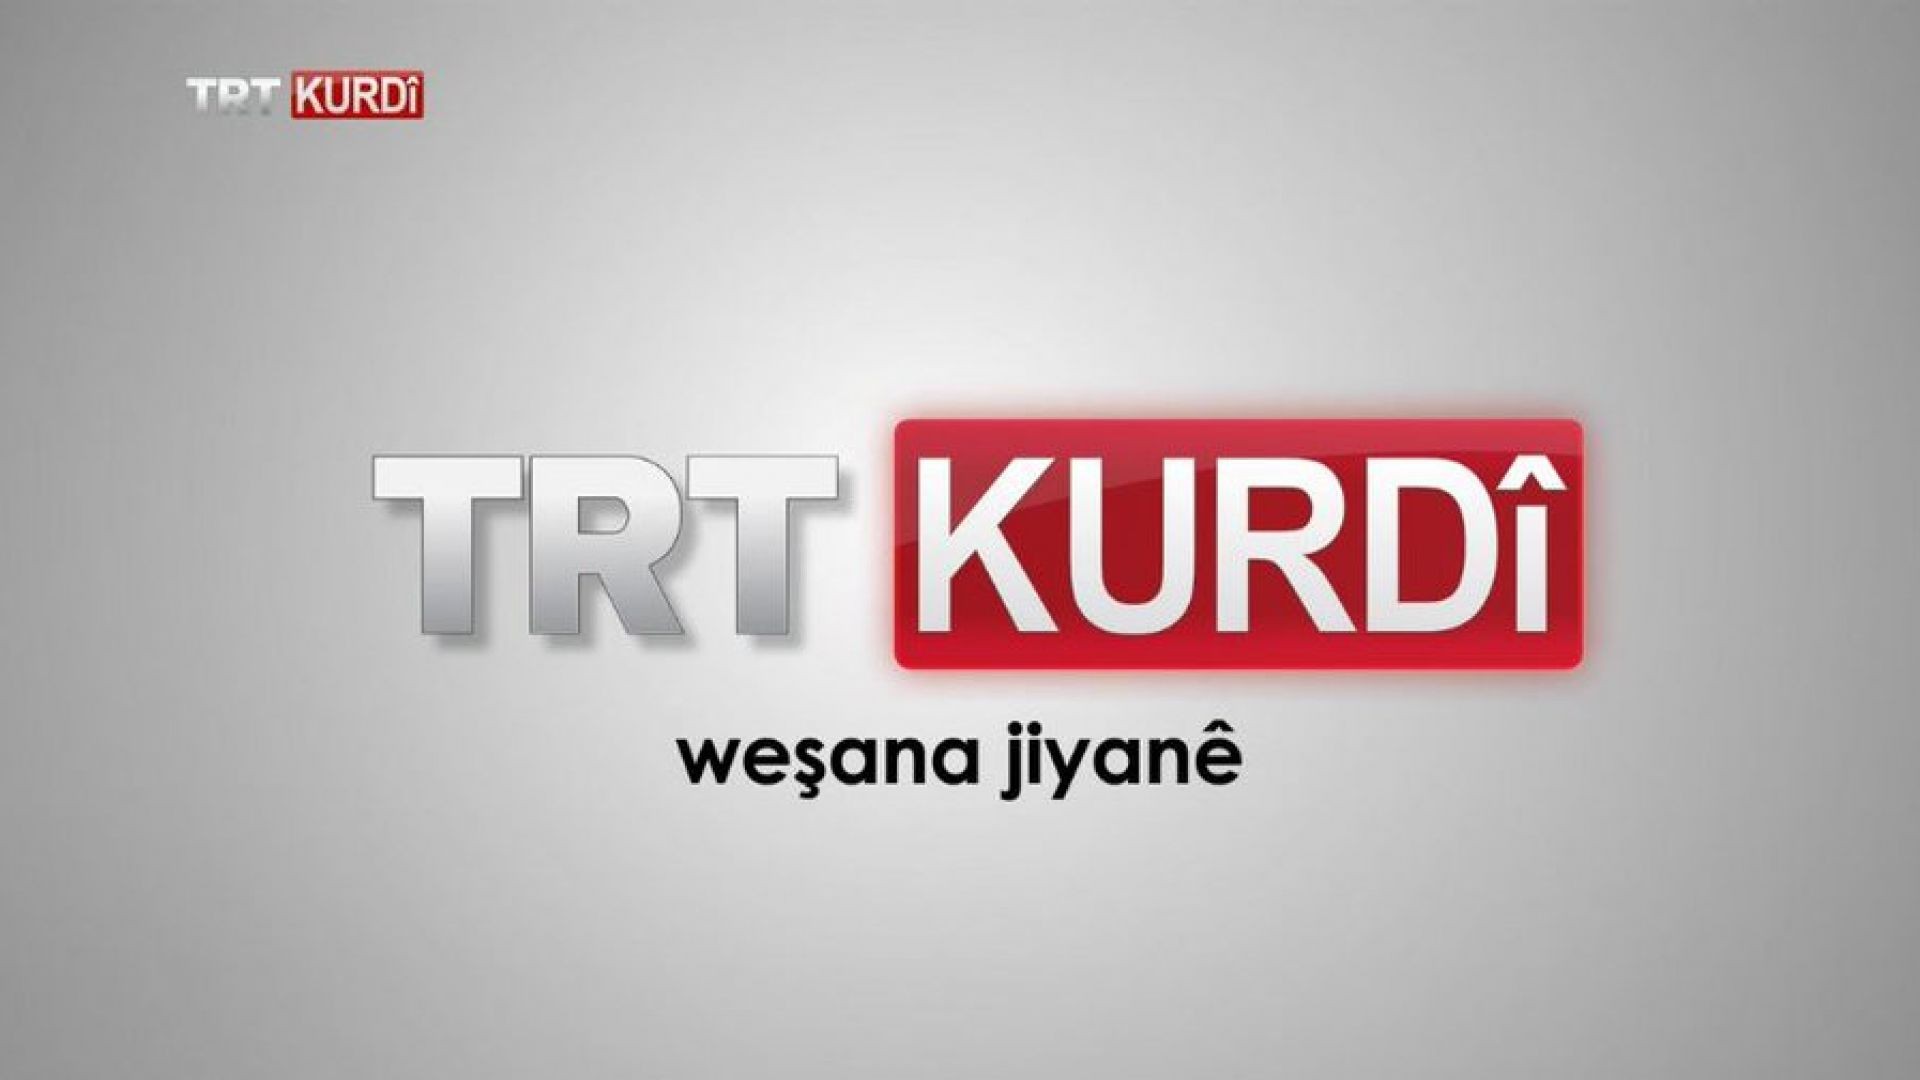 TRT KURDİ Canlı Yayın Live Stream